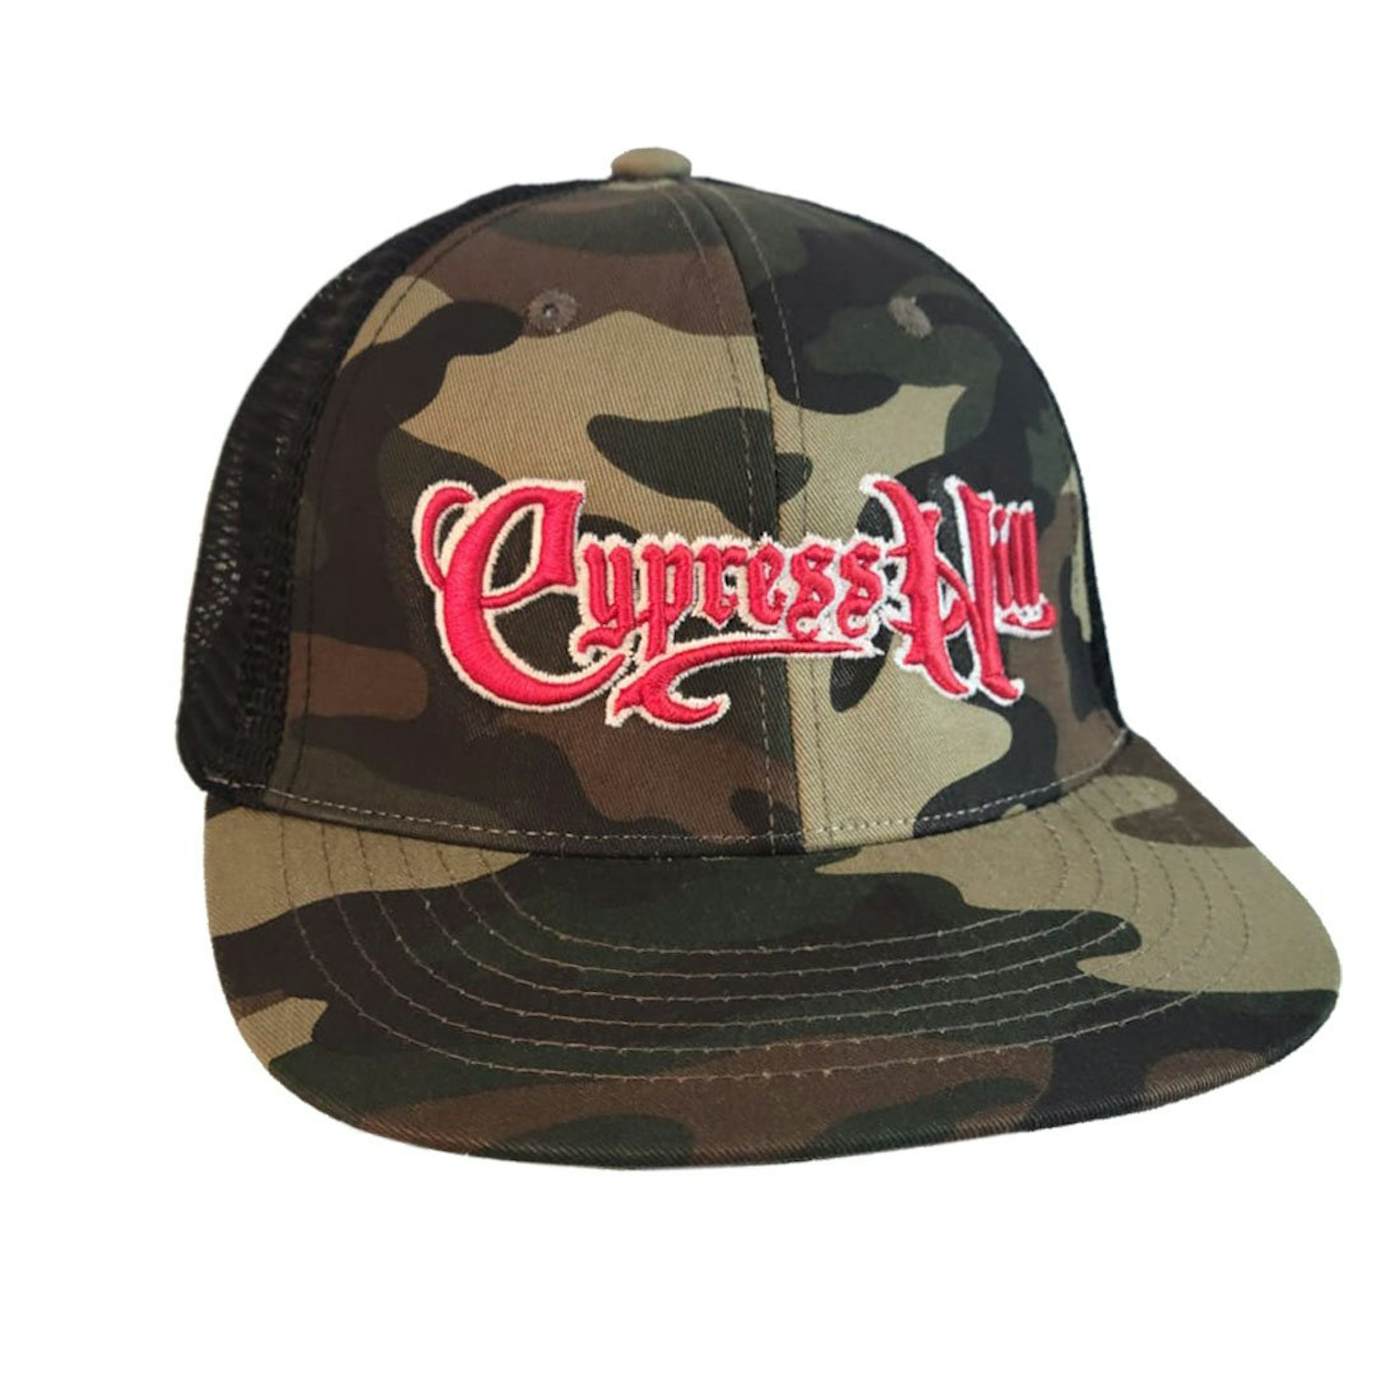 Cypress Hill "Script Logo" Snapback Hat in Green Camo